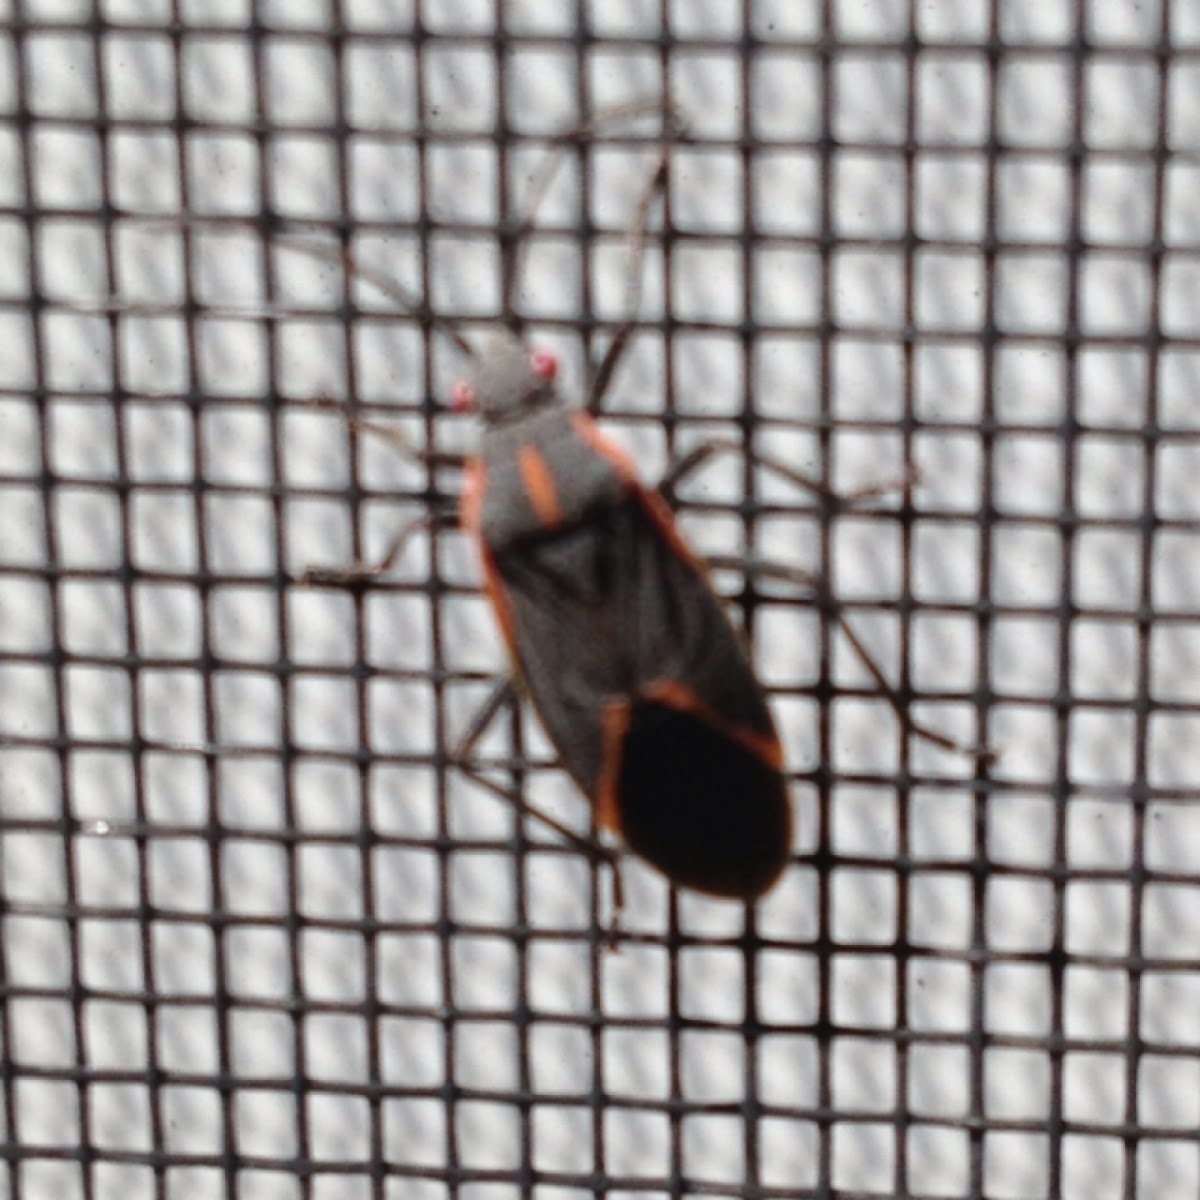 Boxelder bug